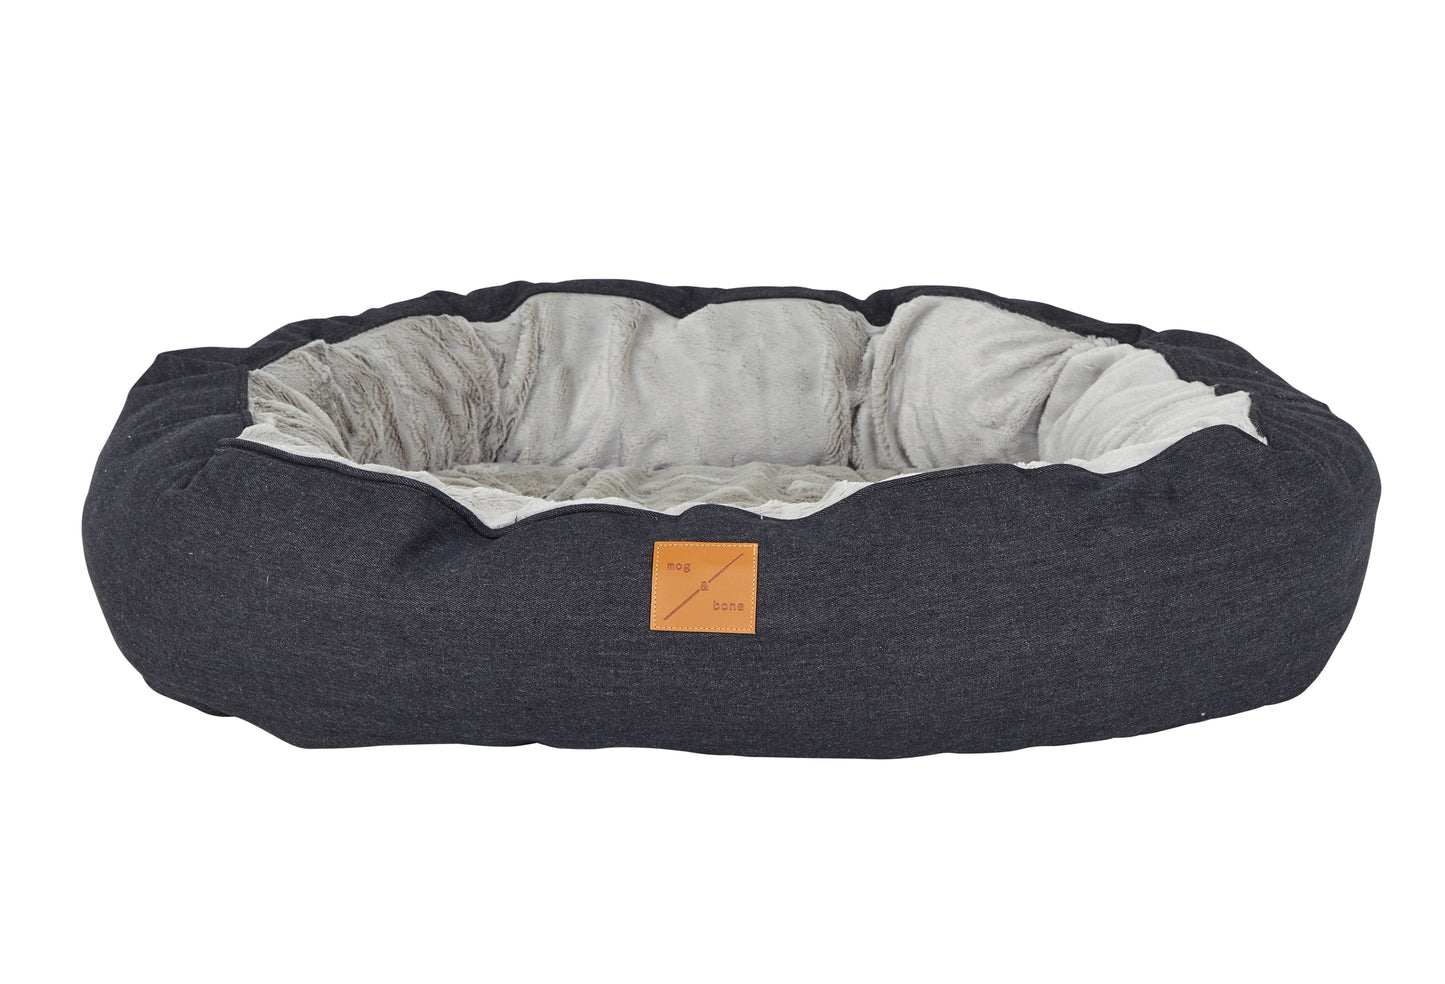 Mog & Bone 4 Seasons Reversible Circular Dog Bed - Black Denim